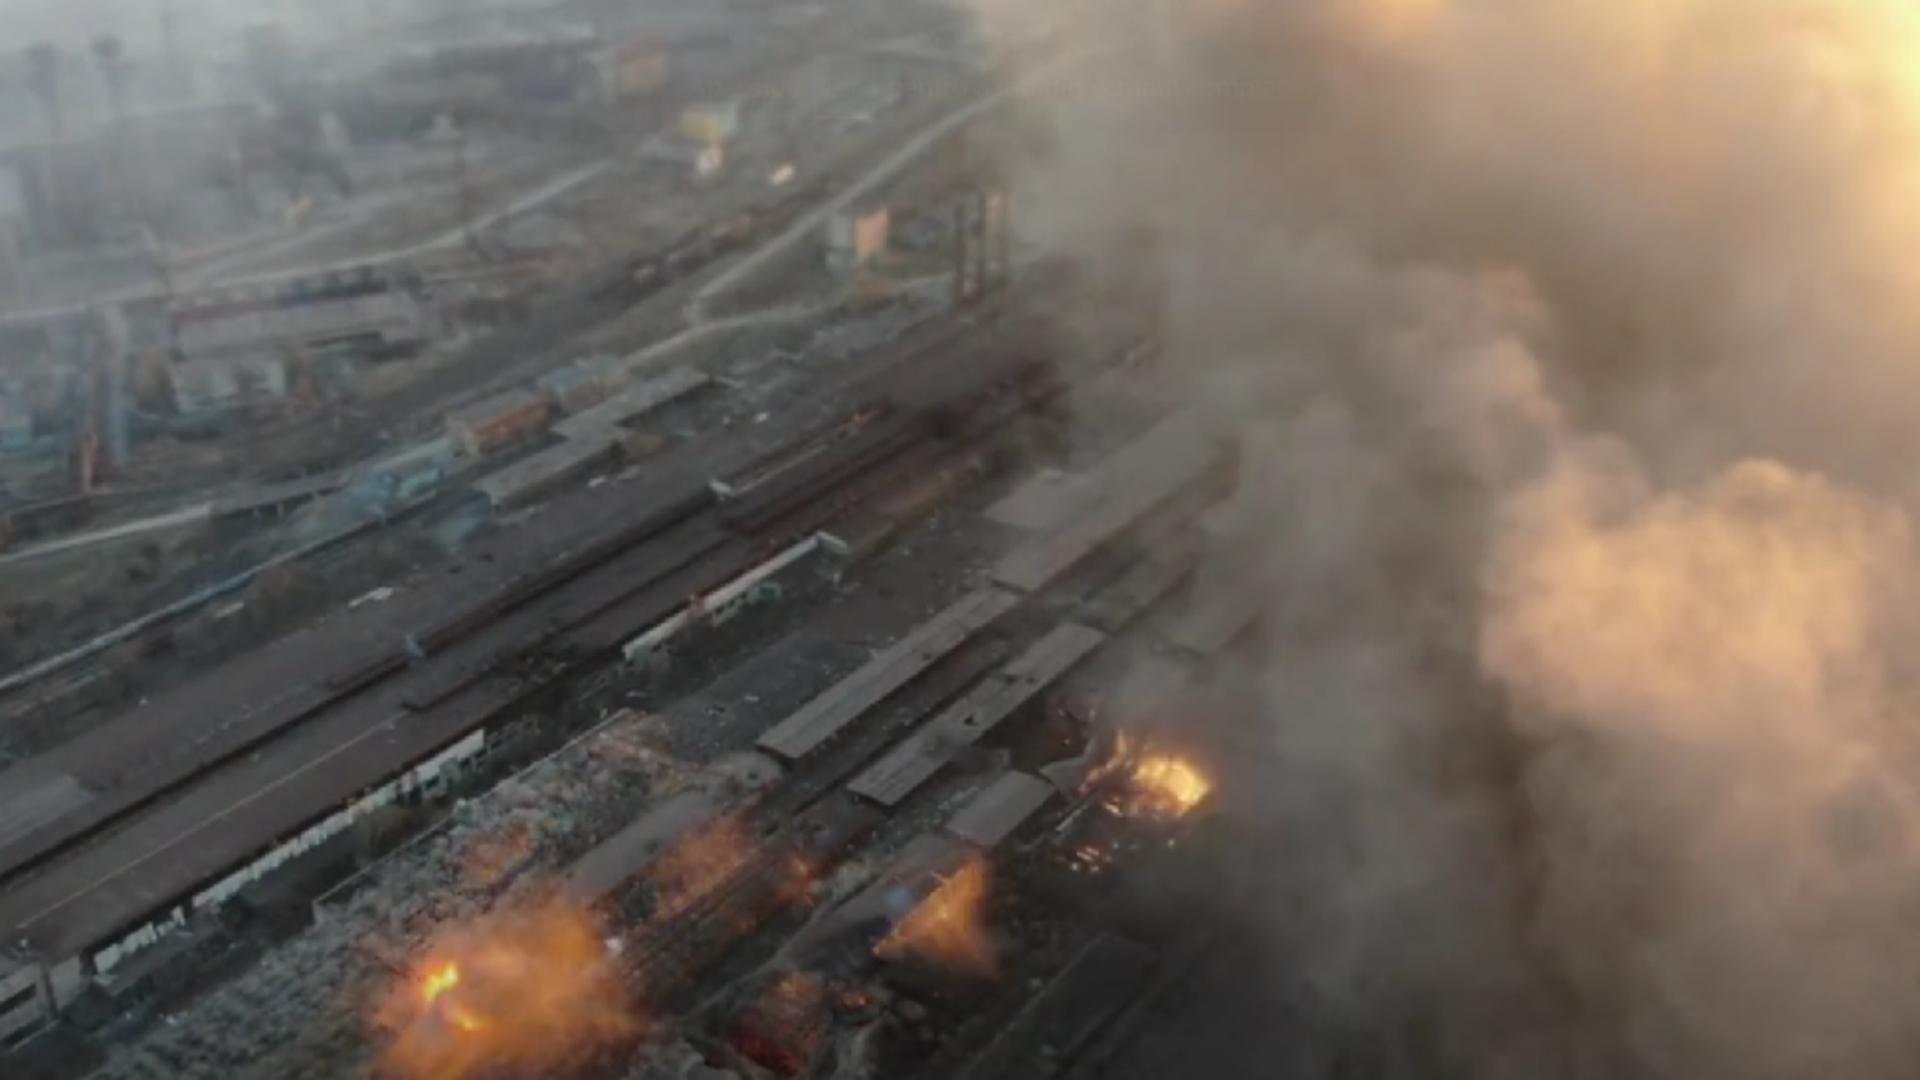 Bombardament Mariupol (sursă: azov.org.ua) - imagine de arhivă